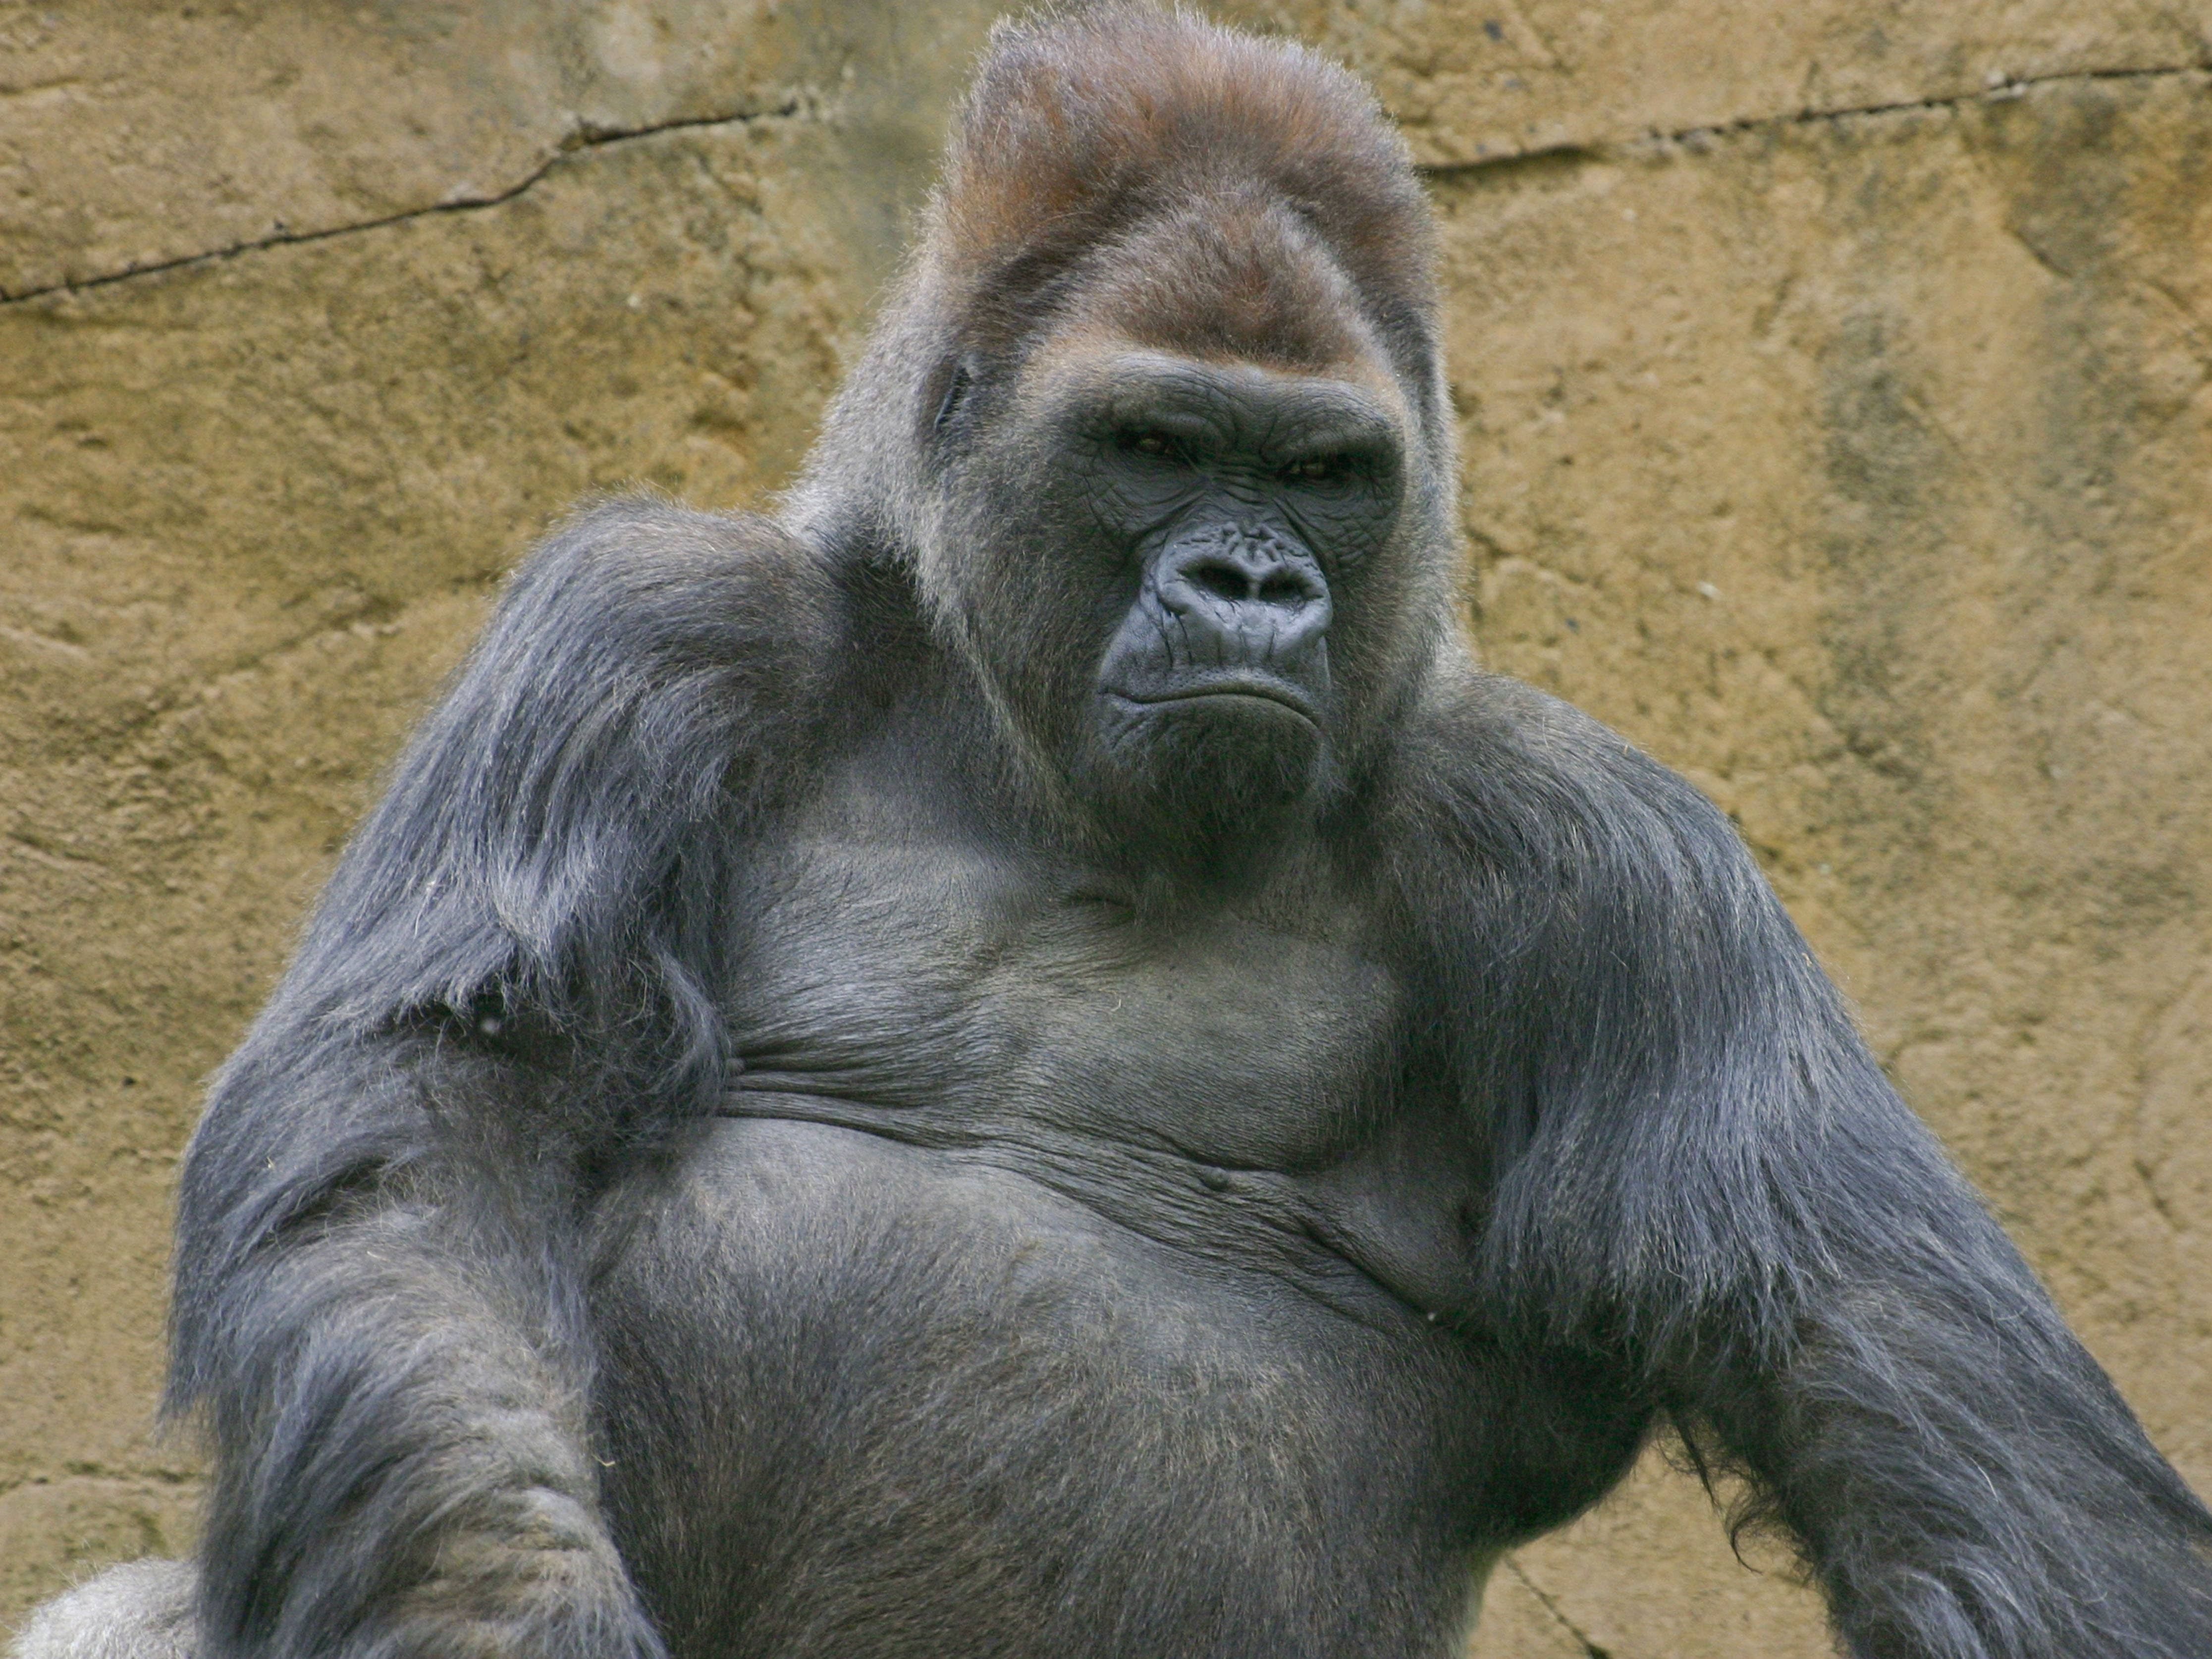 Winston, beloved gorilla at San Diego Zoo Safari Park, dies aged 52